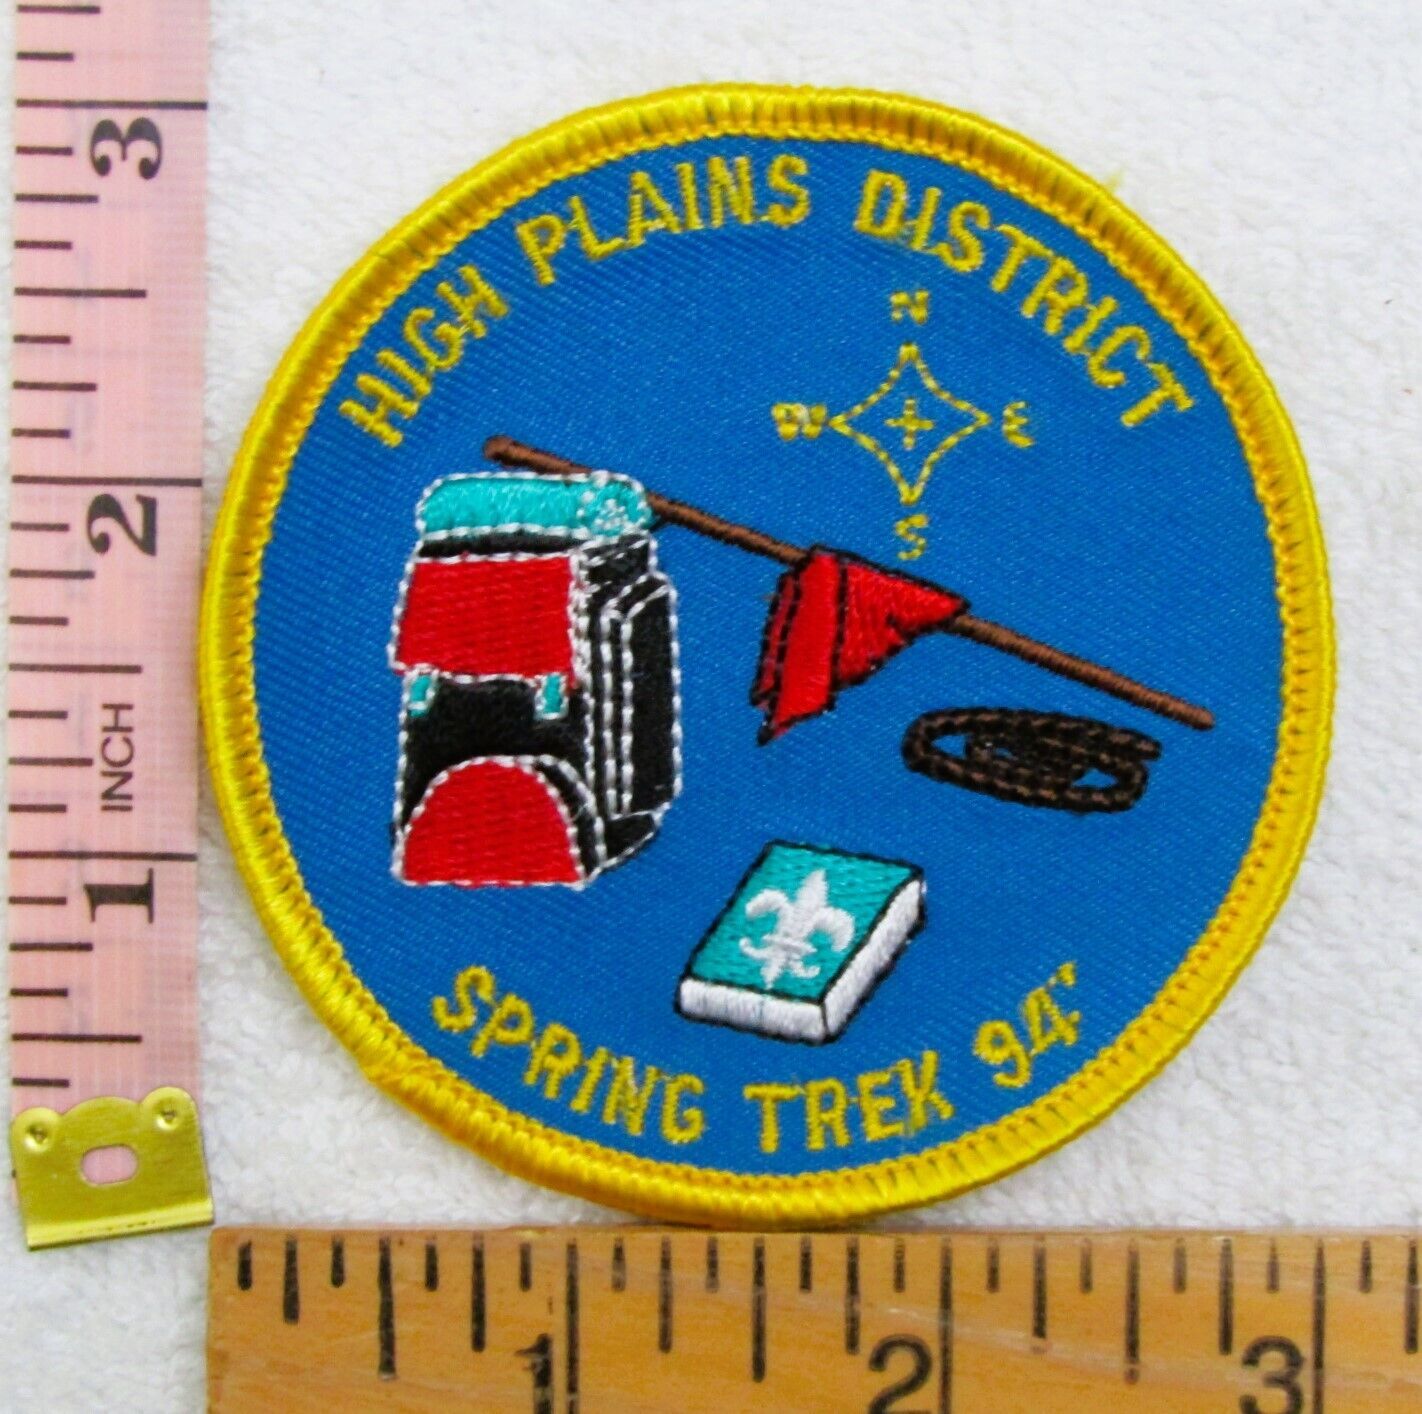 1994 Spring Trek High Plains District BSA Patch